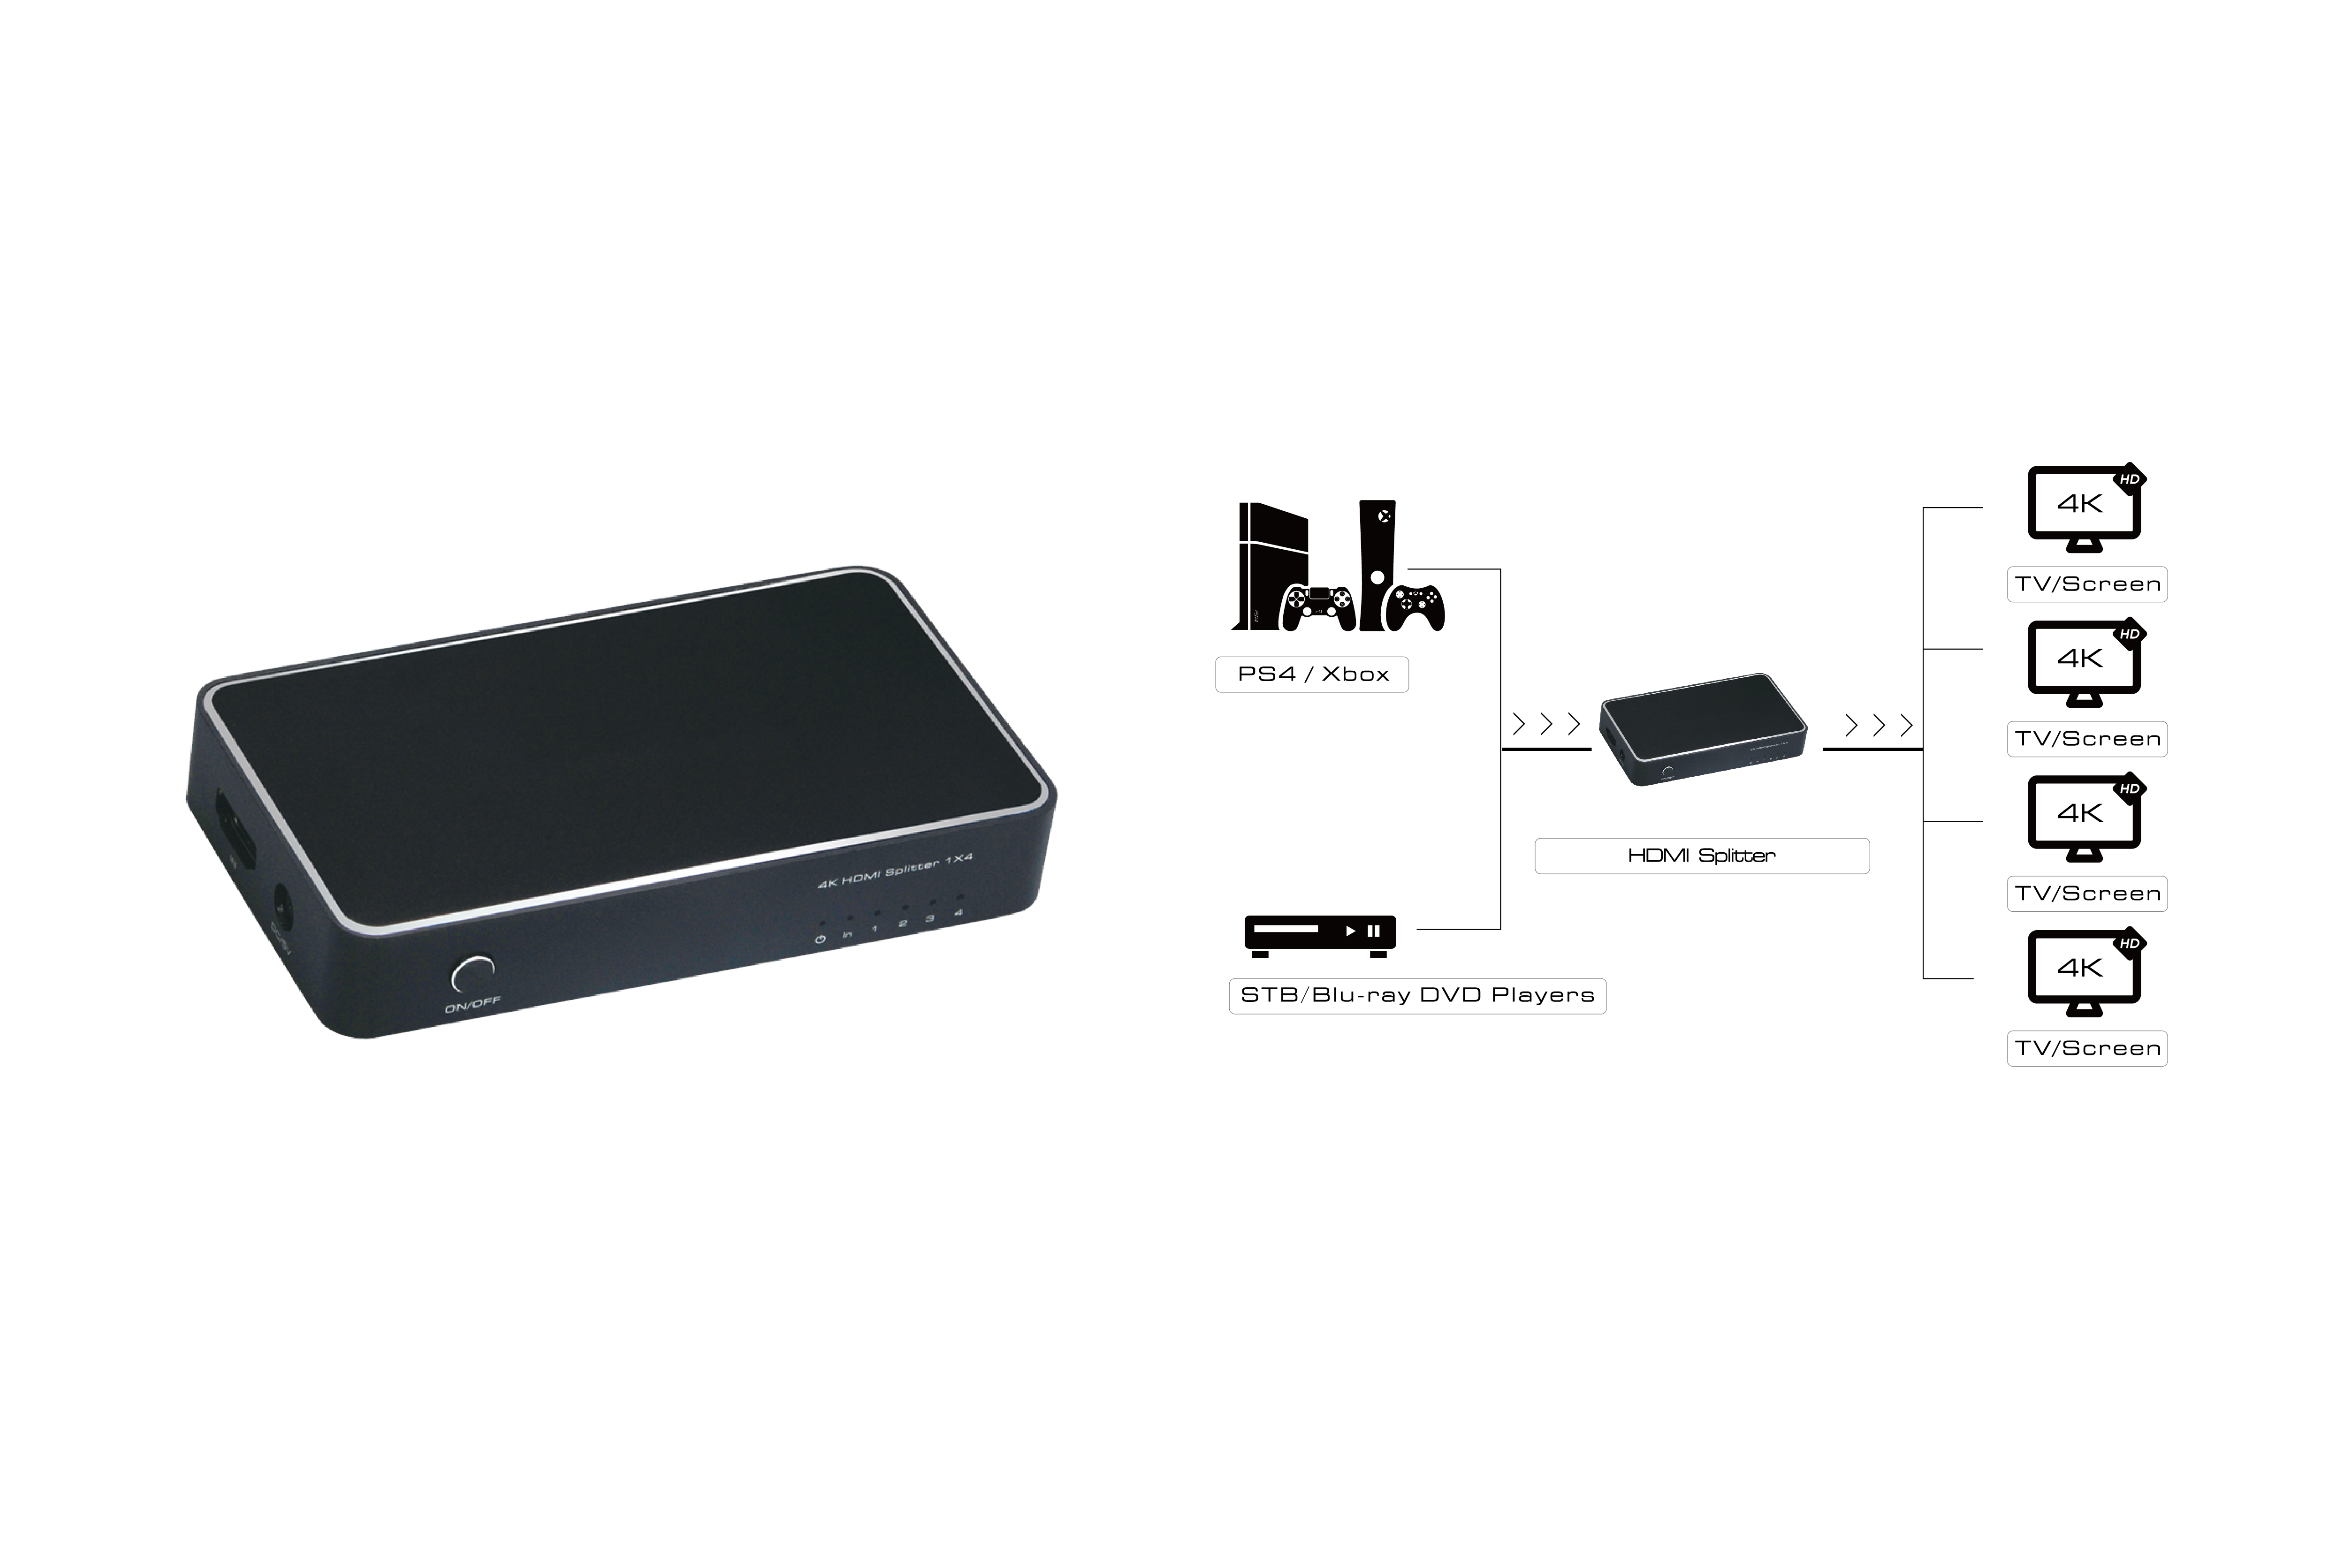 Разветвитель 1 вход - устройство на 2/4 выхода - дисплей монитор TV проектор для дублирования изображения HDMI 1.4 сплиттер с усилителем сигнала